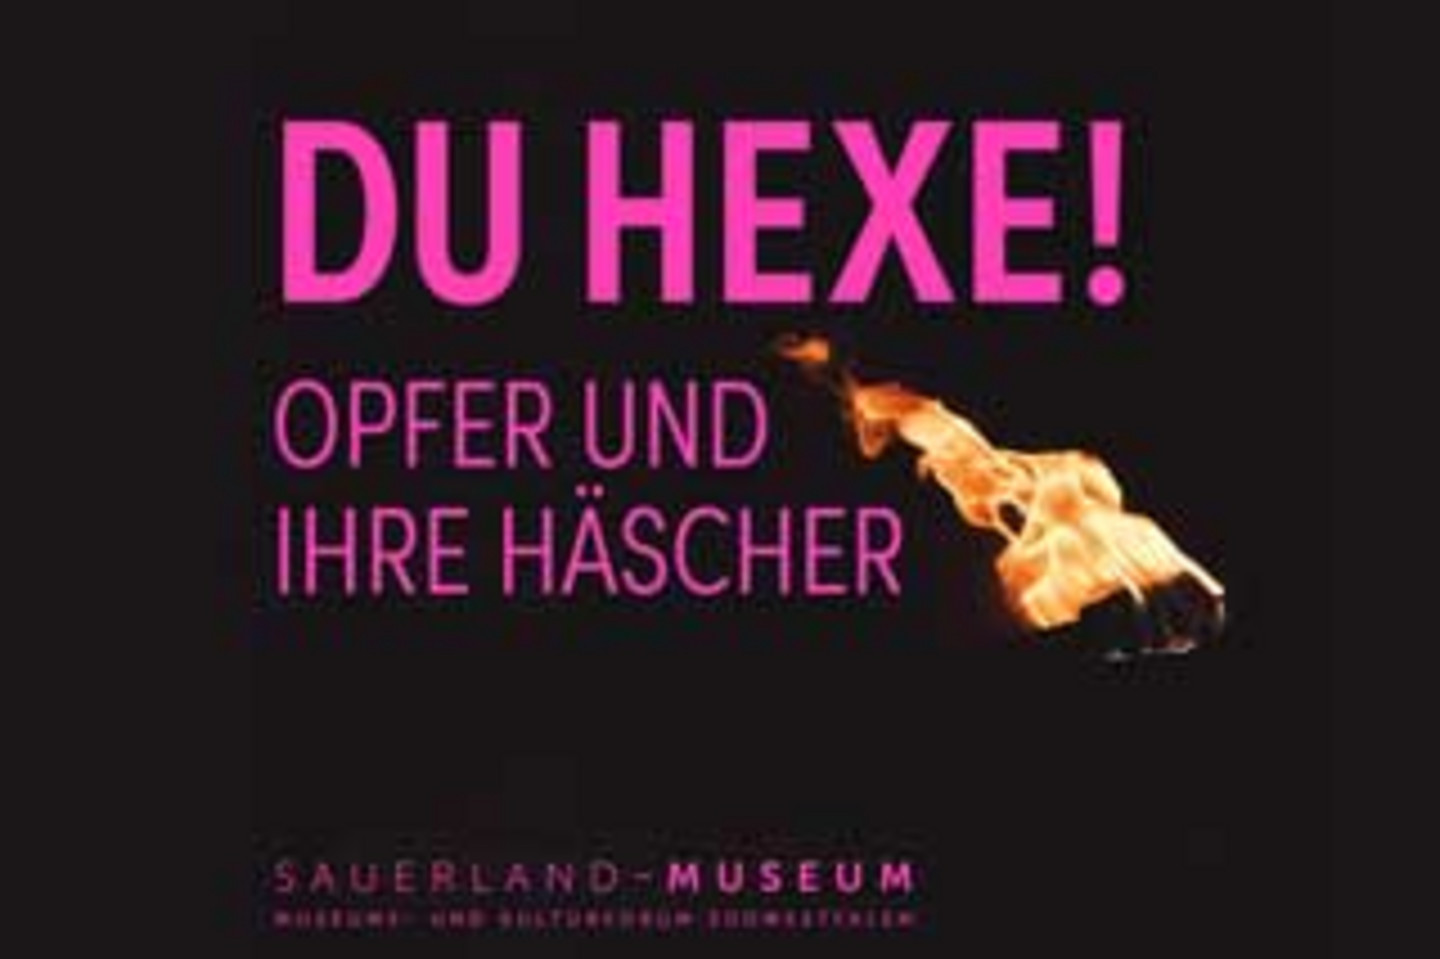 Ausstellungsmotiv mit der violetten schrift "DU HEXE! Opfer und ihre Häscher". Der Hintergrund ist schwarz und ein Feuer ist abgebildet.